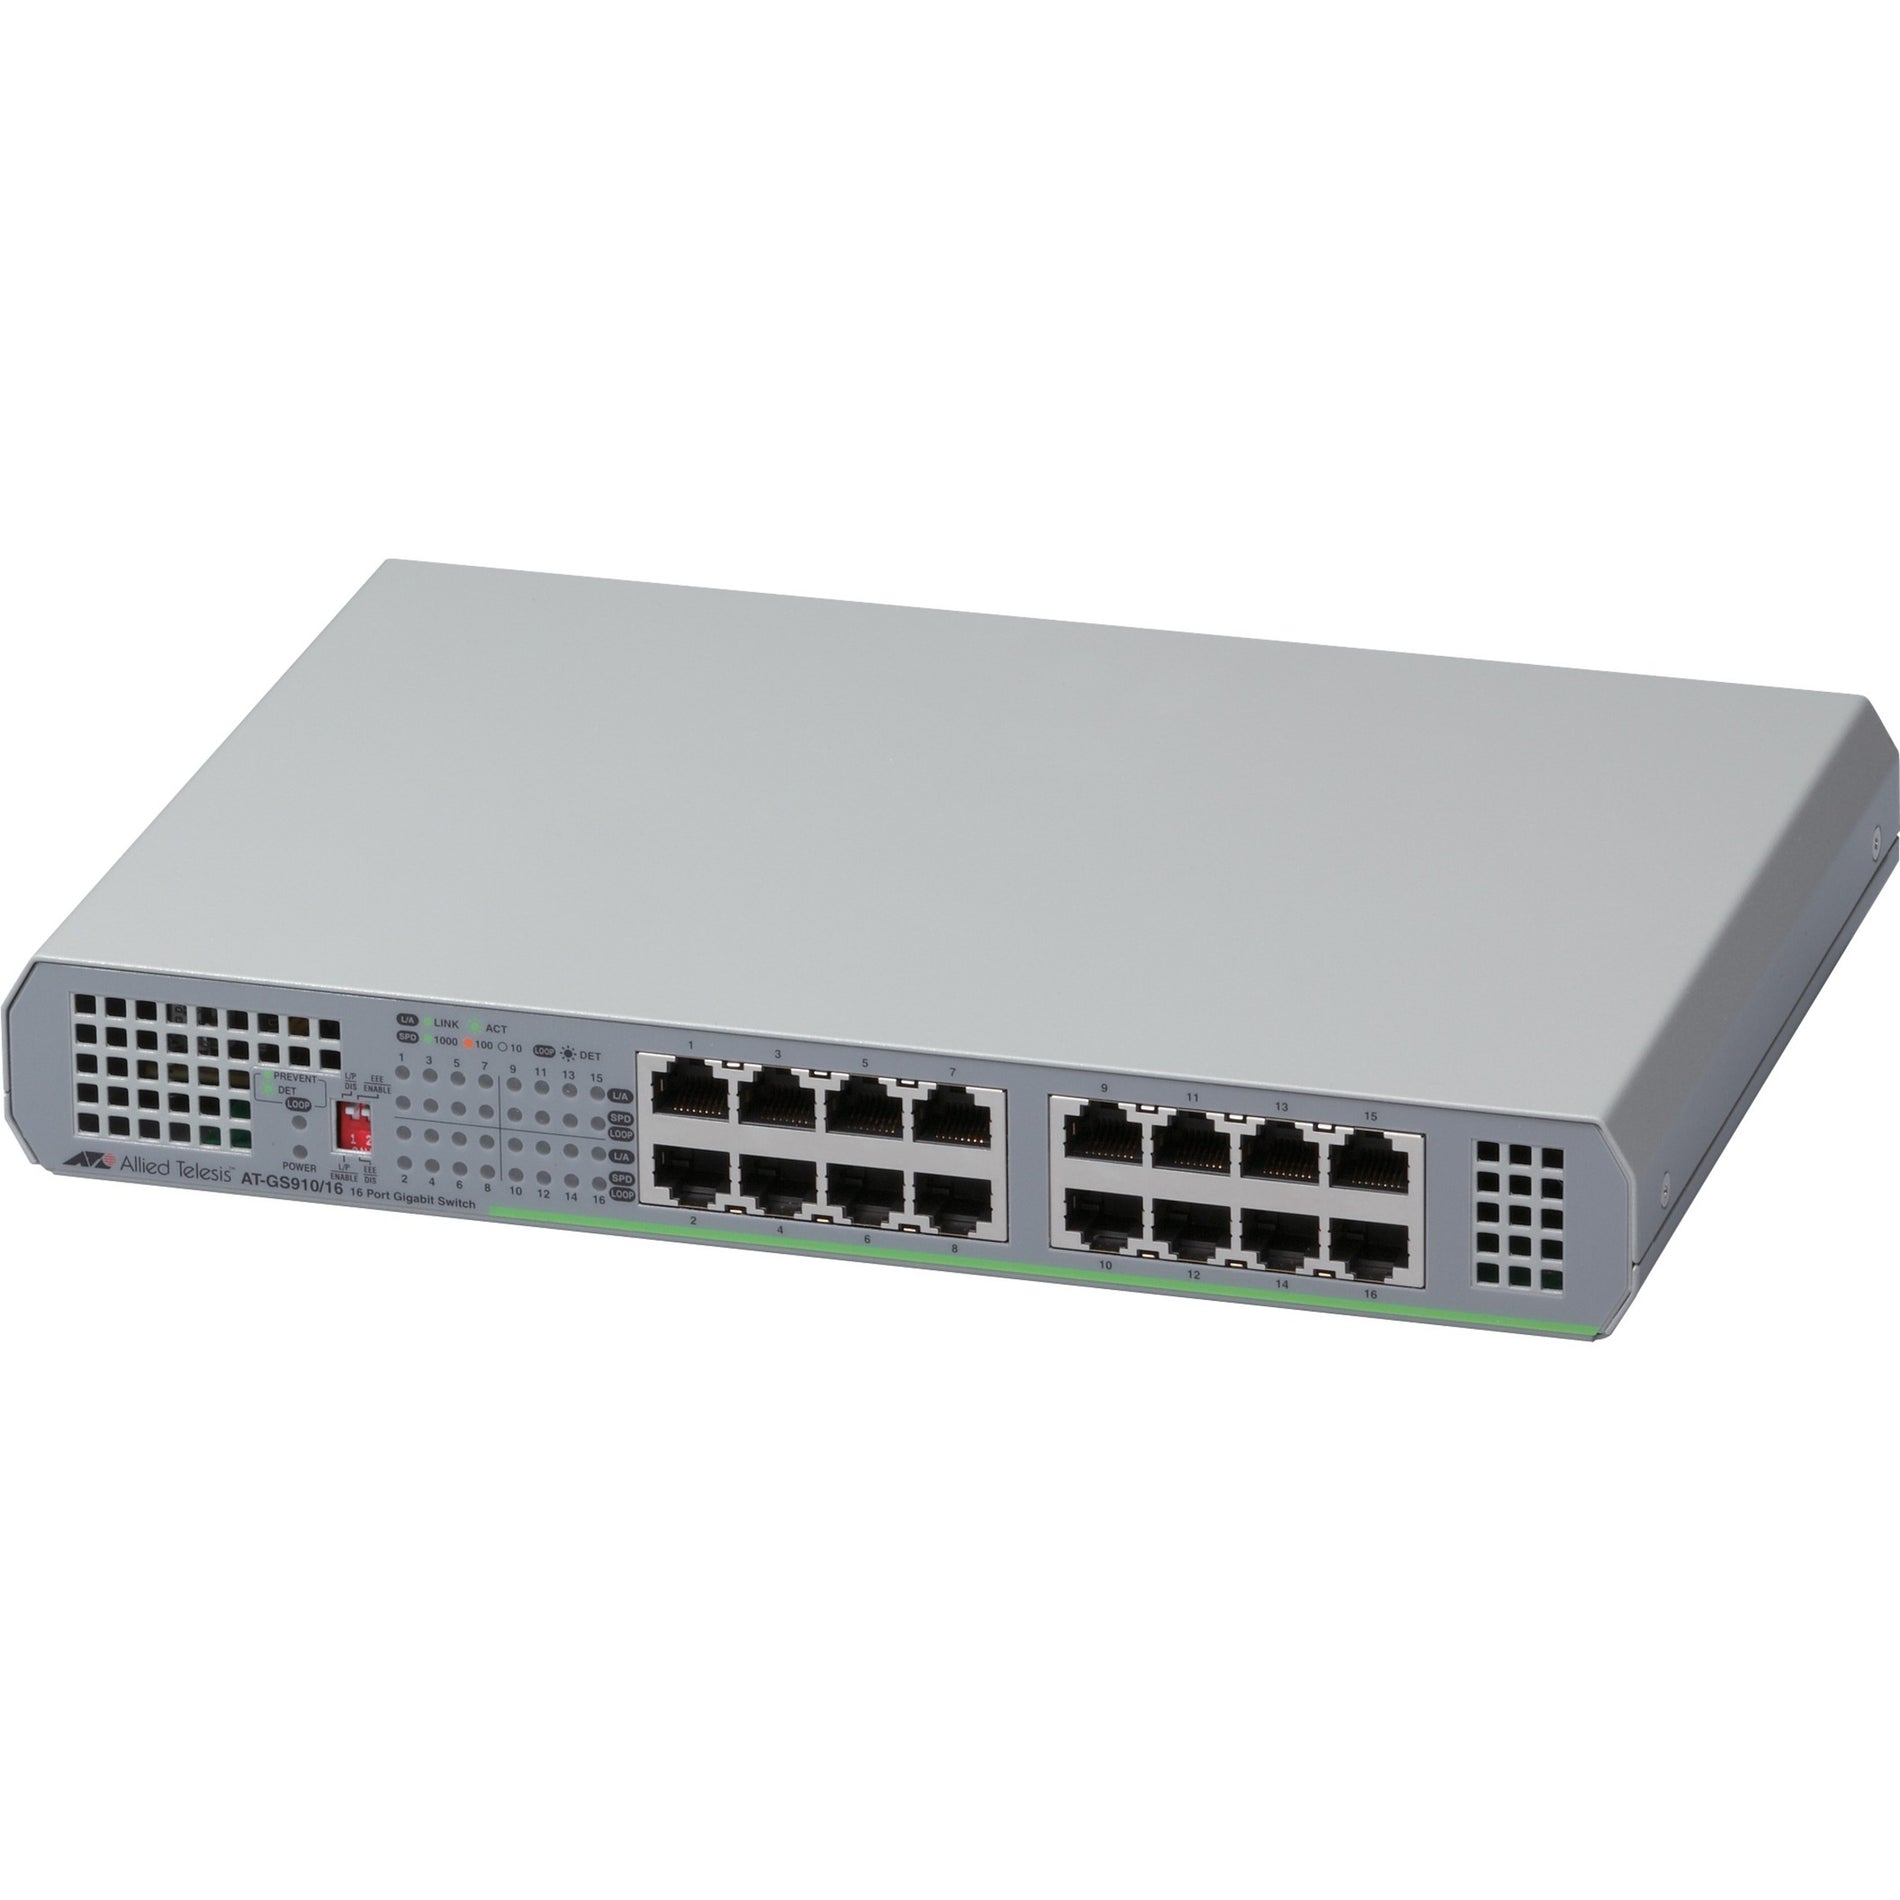 Allied Telesis AT-GS910/16-10 CentreCOM Commutateur non géré 16 ports 10/100/1000T avec PSU interne réseau Ethernet Gigabit